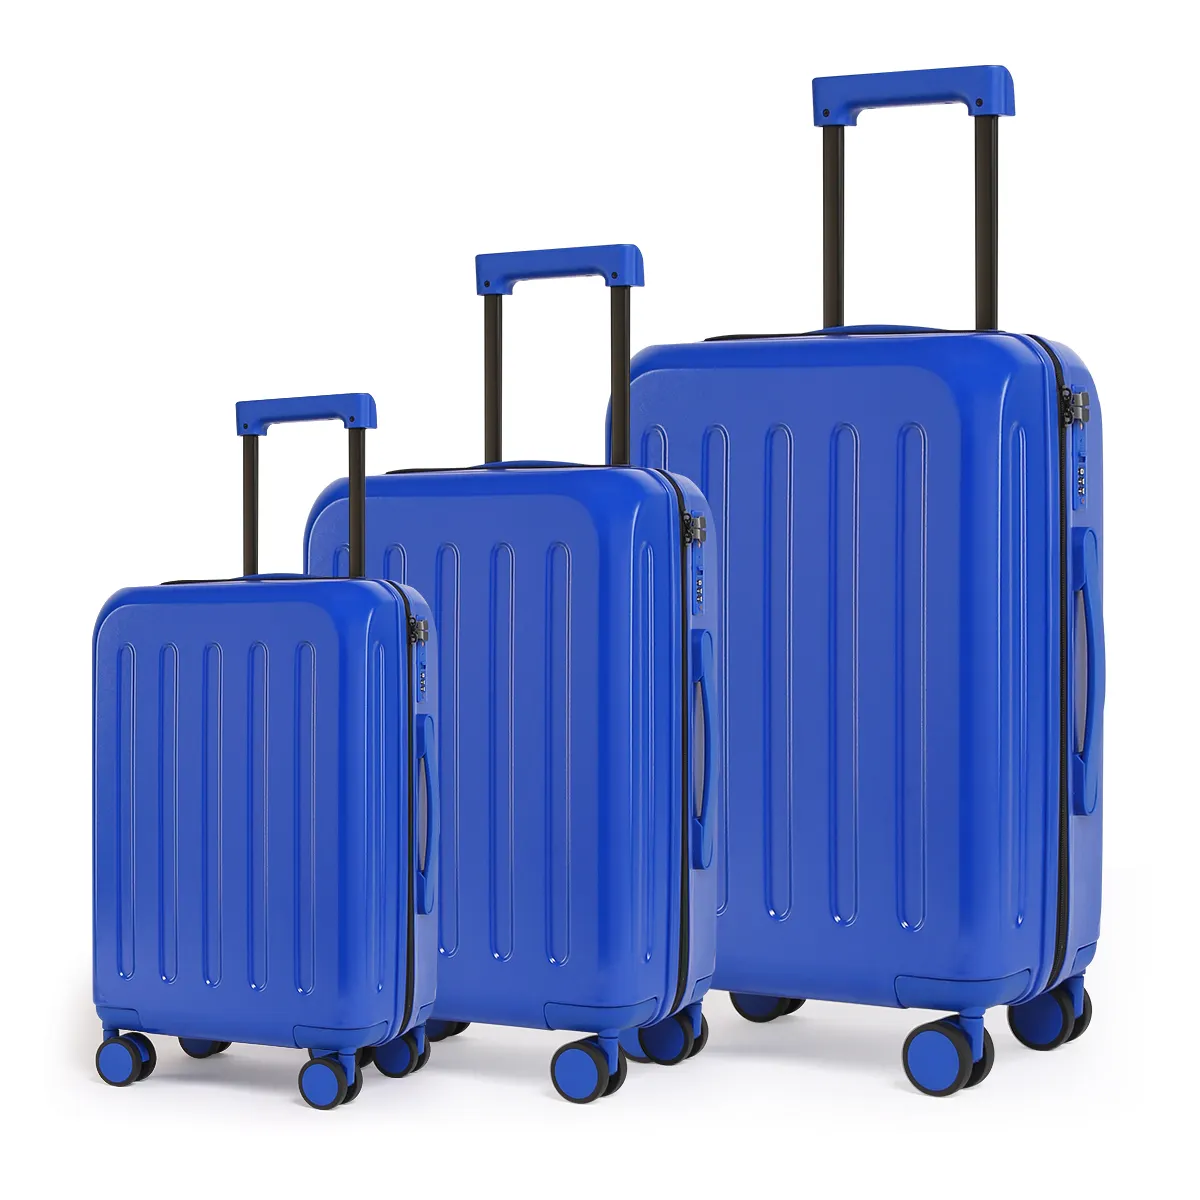 Venta al por mayor nuevo equipaje rígido maleta de viaje 3 uds estuche bolsas trolley viaje ABS maleta